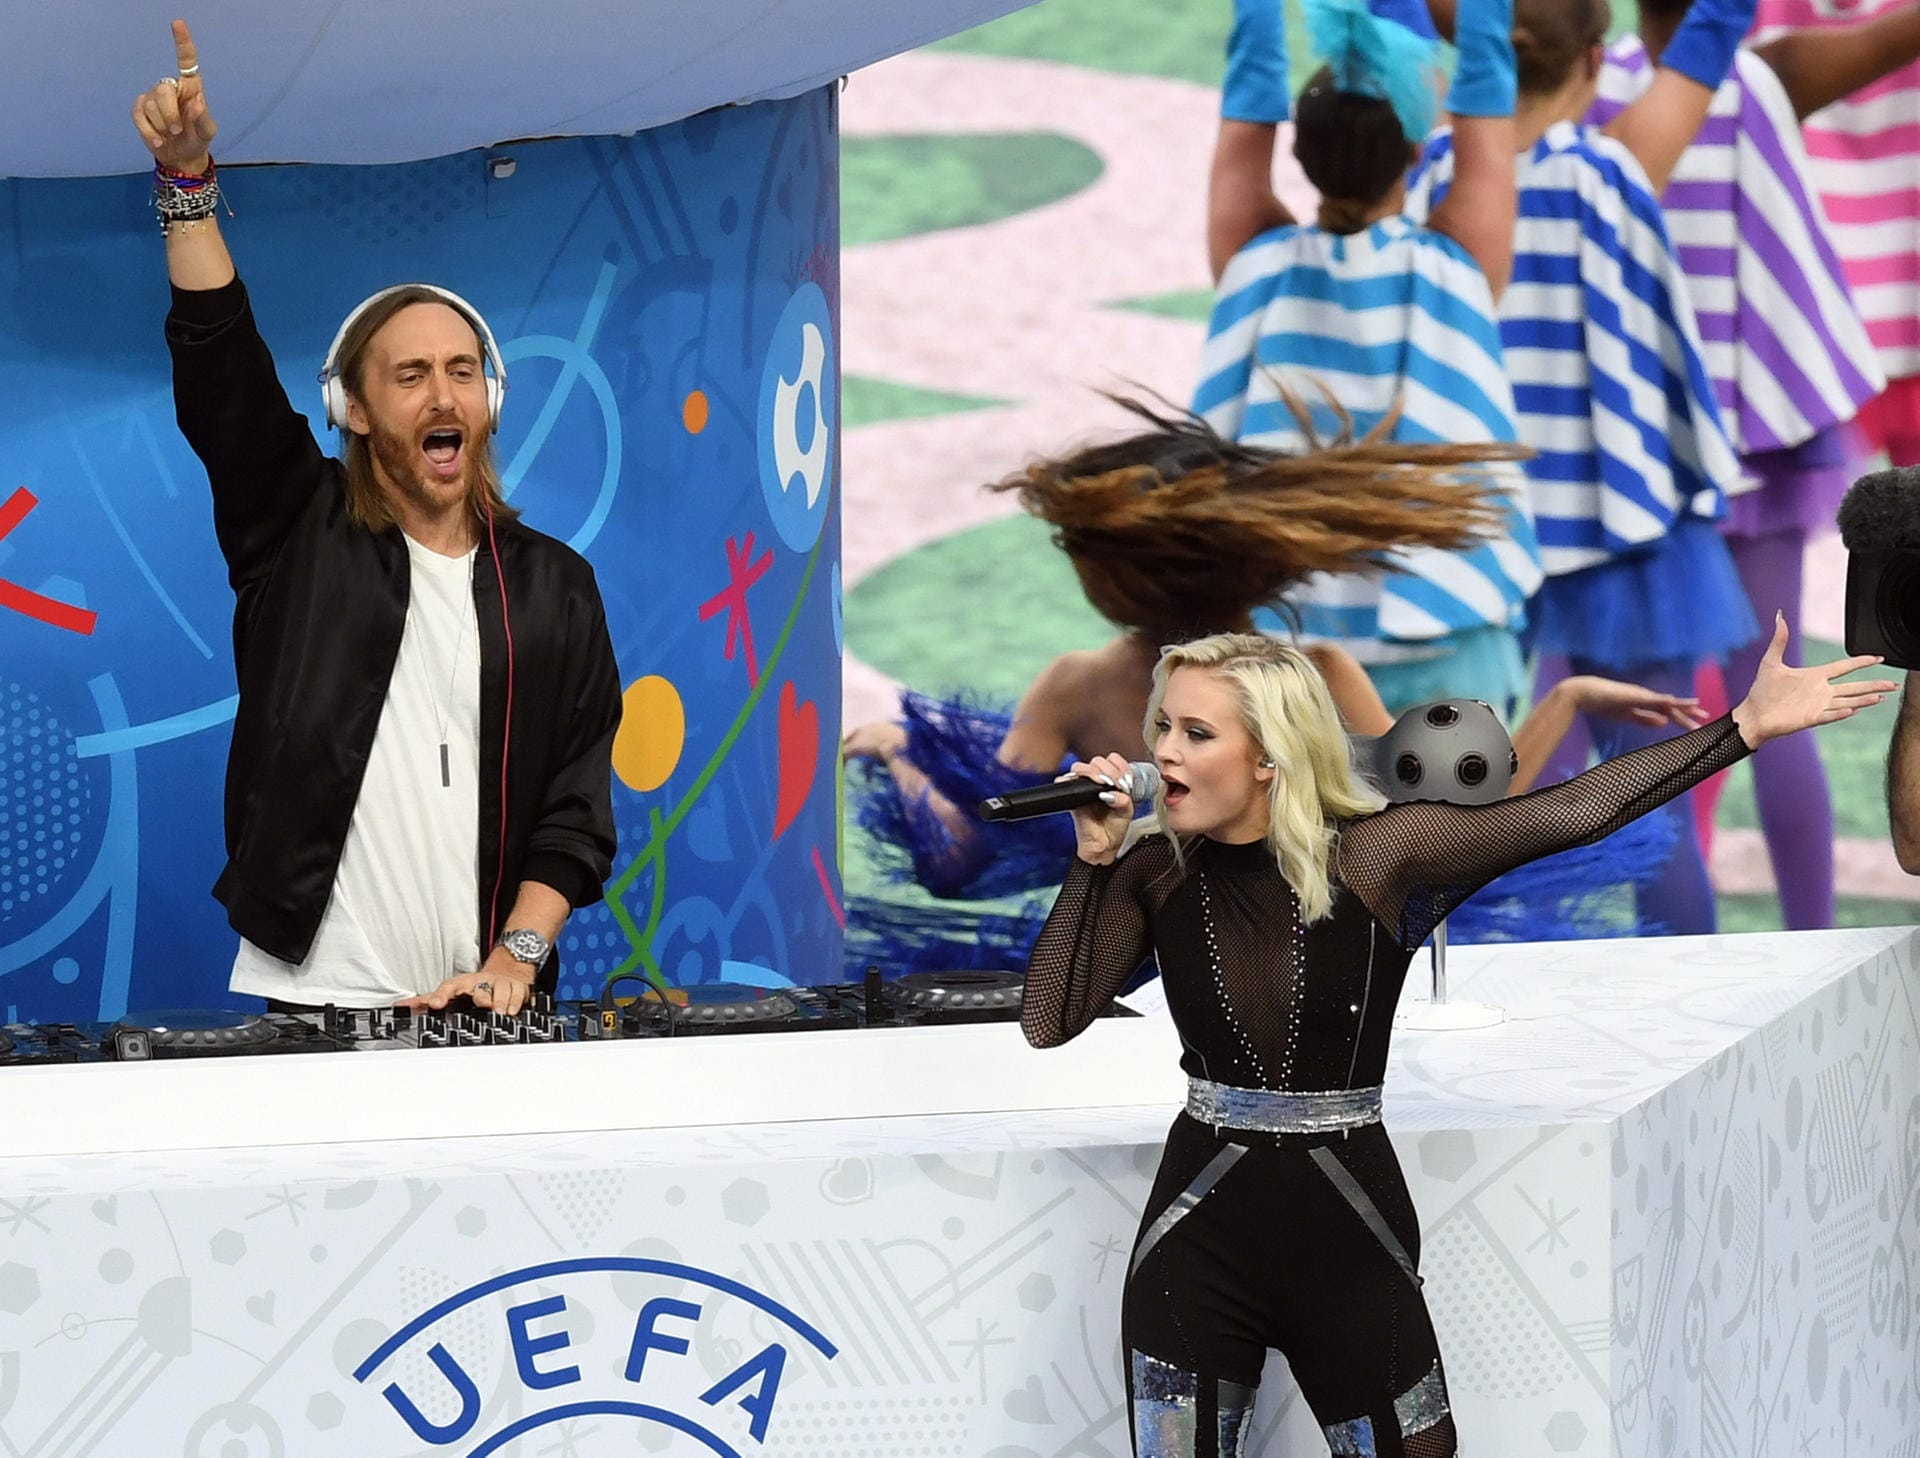 Dann taucht David Guetta (li.) aus einem riesigen Karussell im Mittelkreis auf und heizt dem Publikum ein. Zusammen mit der schwedischen Sängerin Zara Larsson gibt der französische Star-DJ den EM-Song "This One's For You" zum Besten.